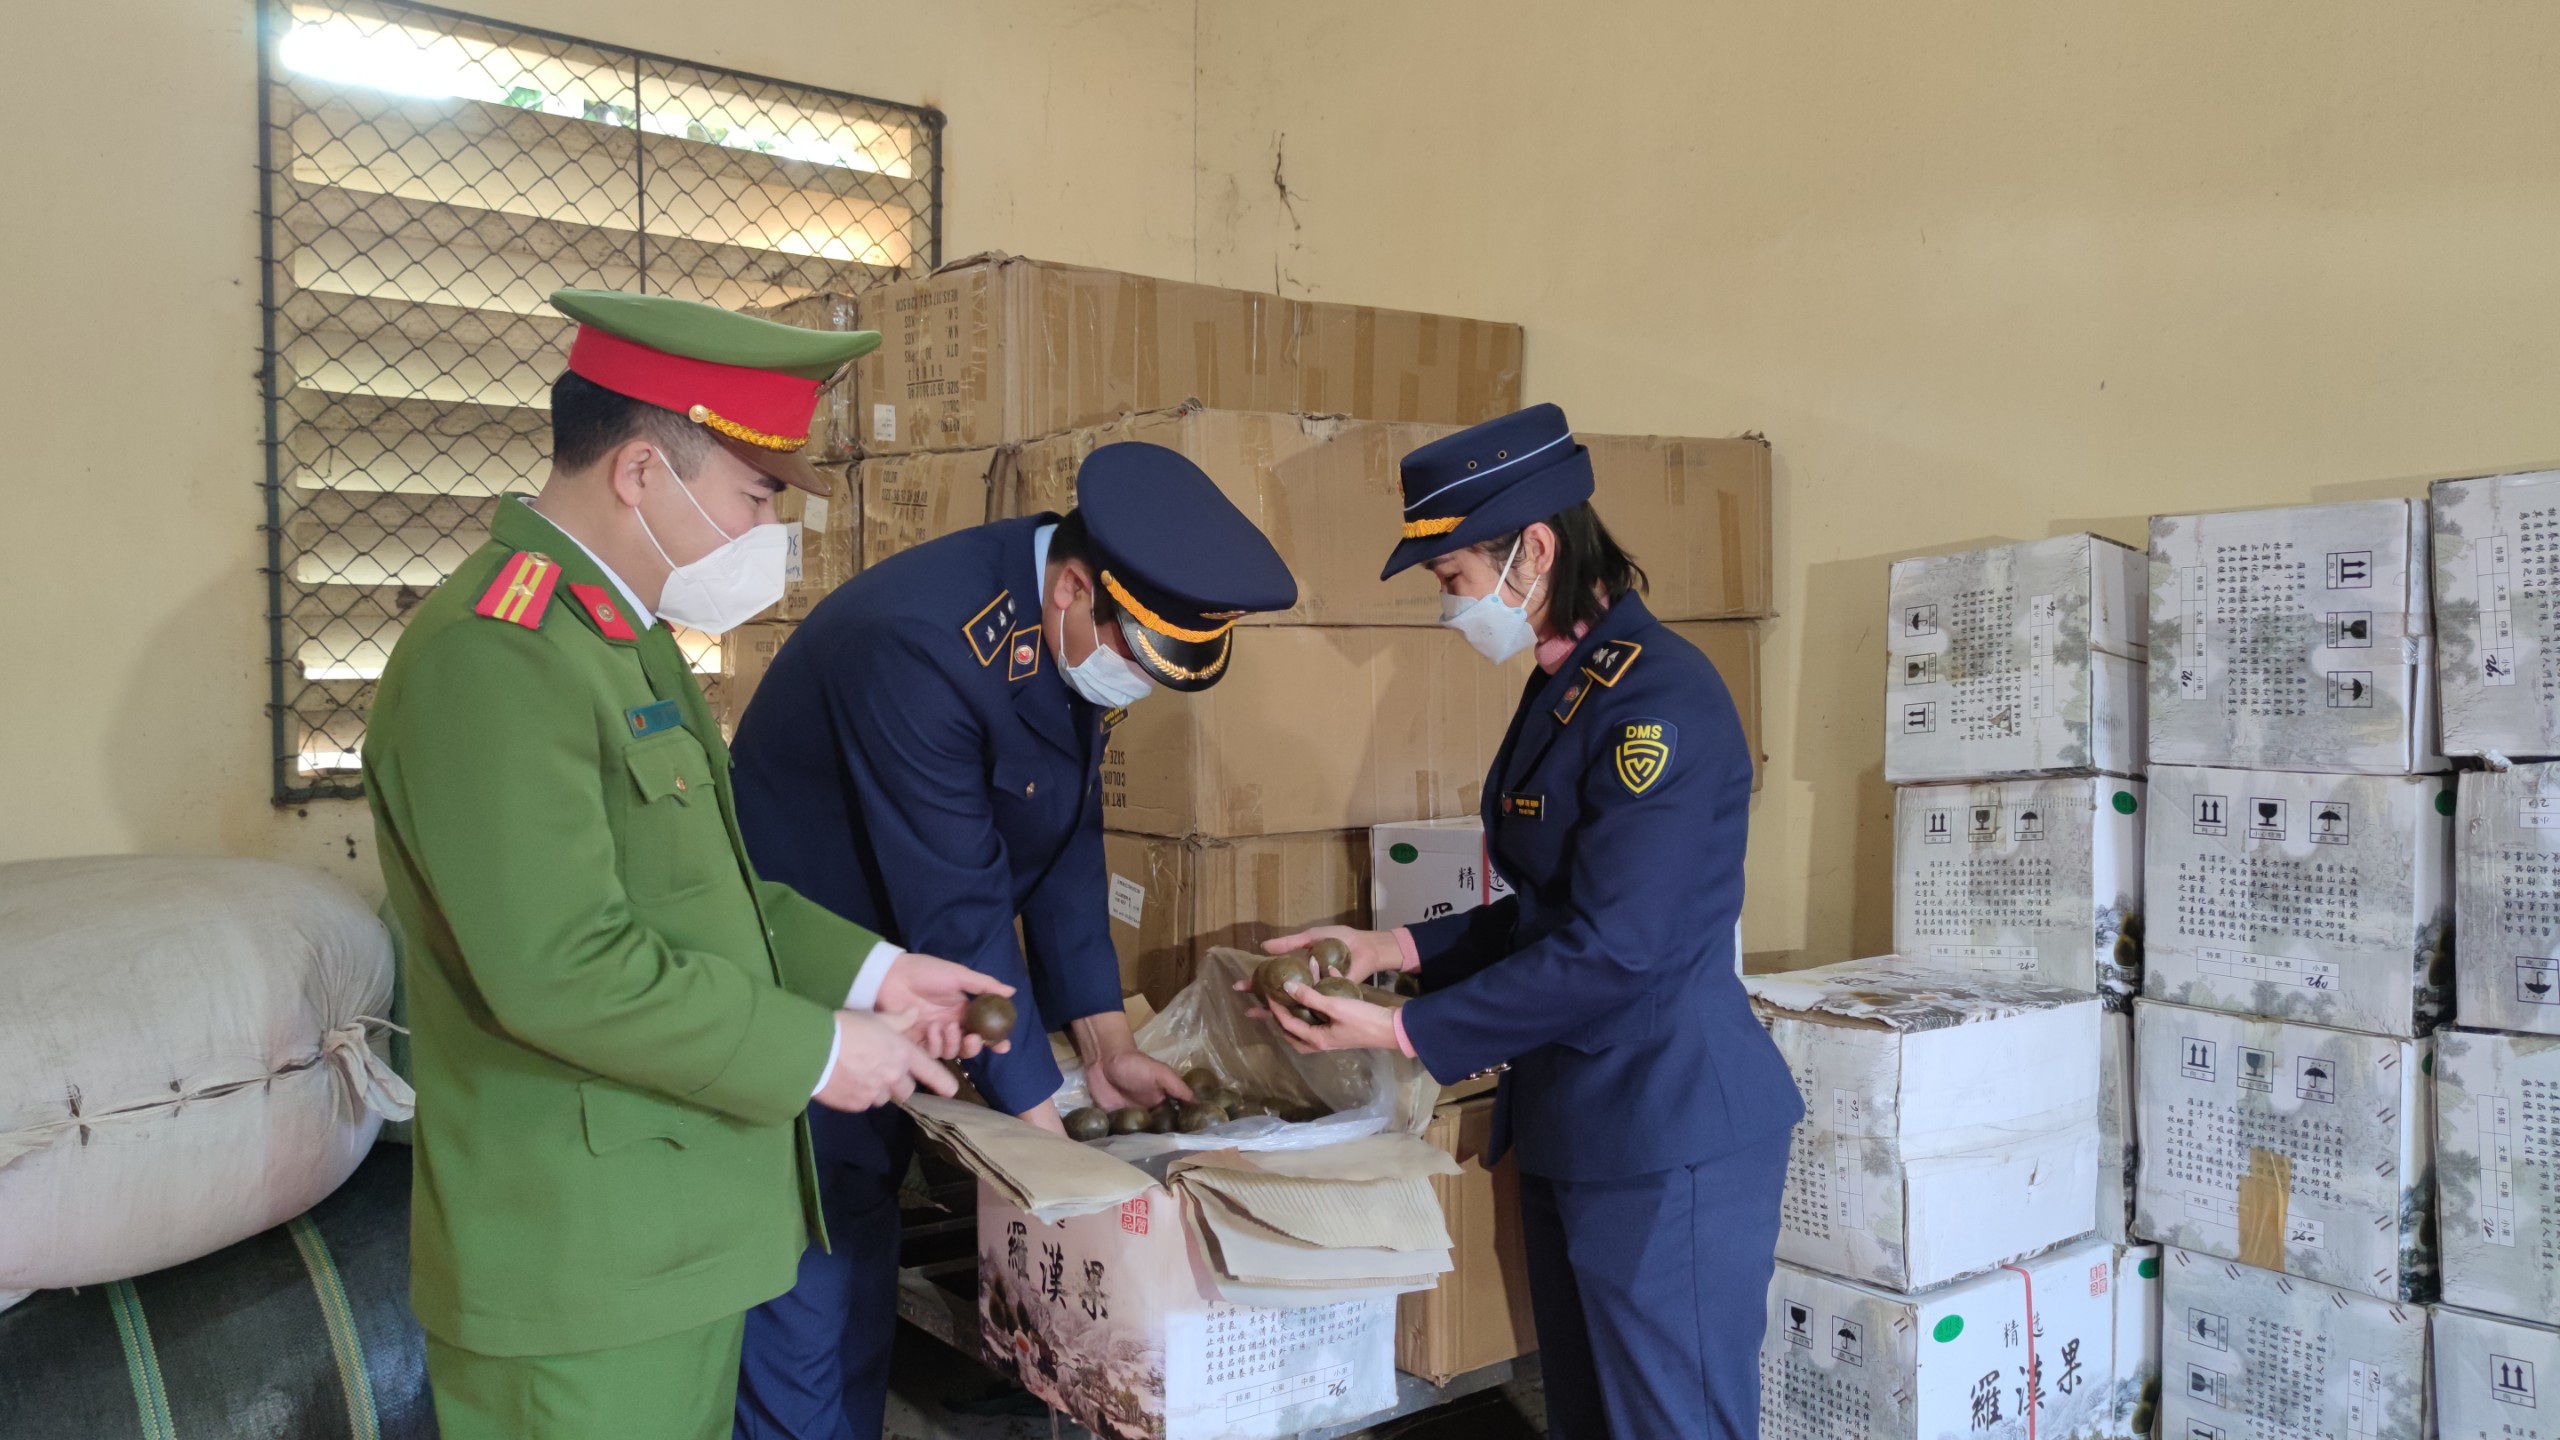 1,8 tấn dược liệu không xuất xứ tuồn vào Lào Cai bị thu giữ